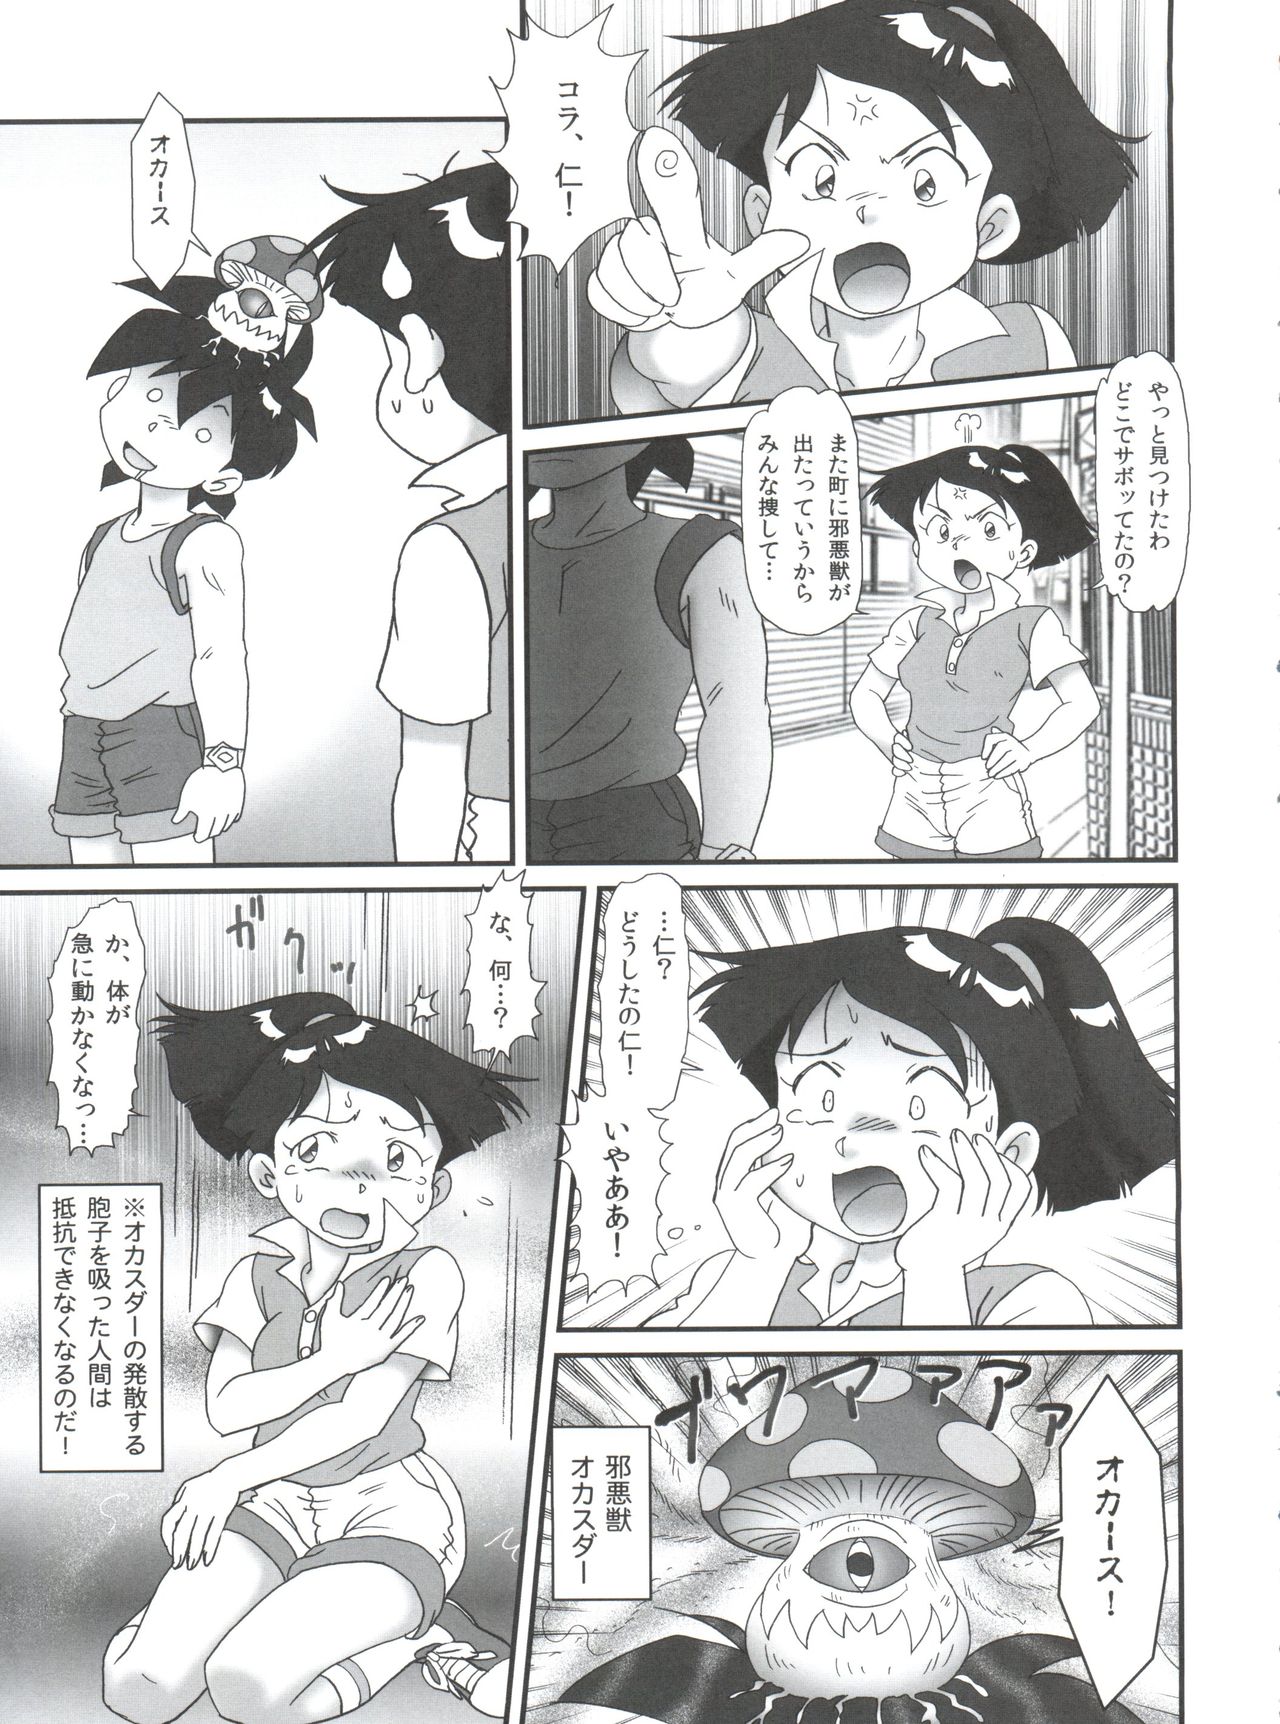 Read Comic Nipopo Crisis Genka Ichien Tanoshii Koto O Naisho